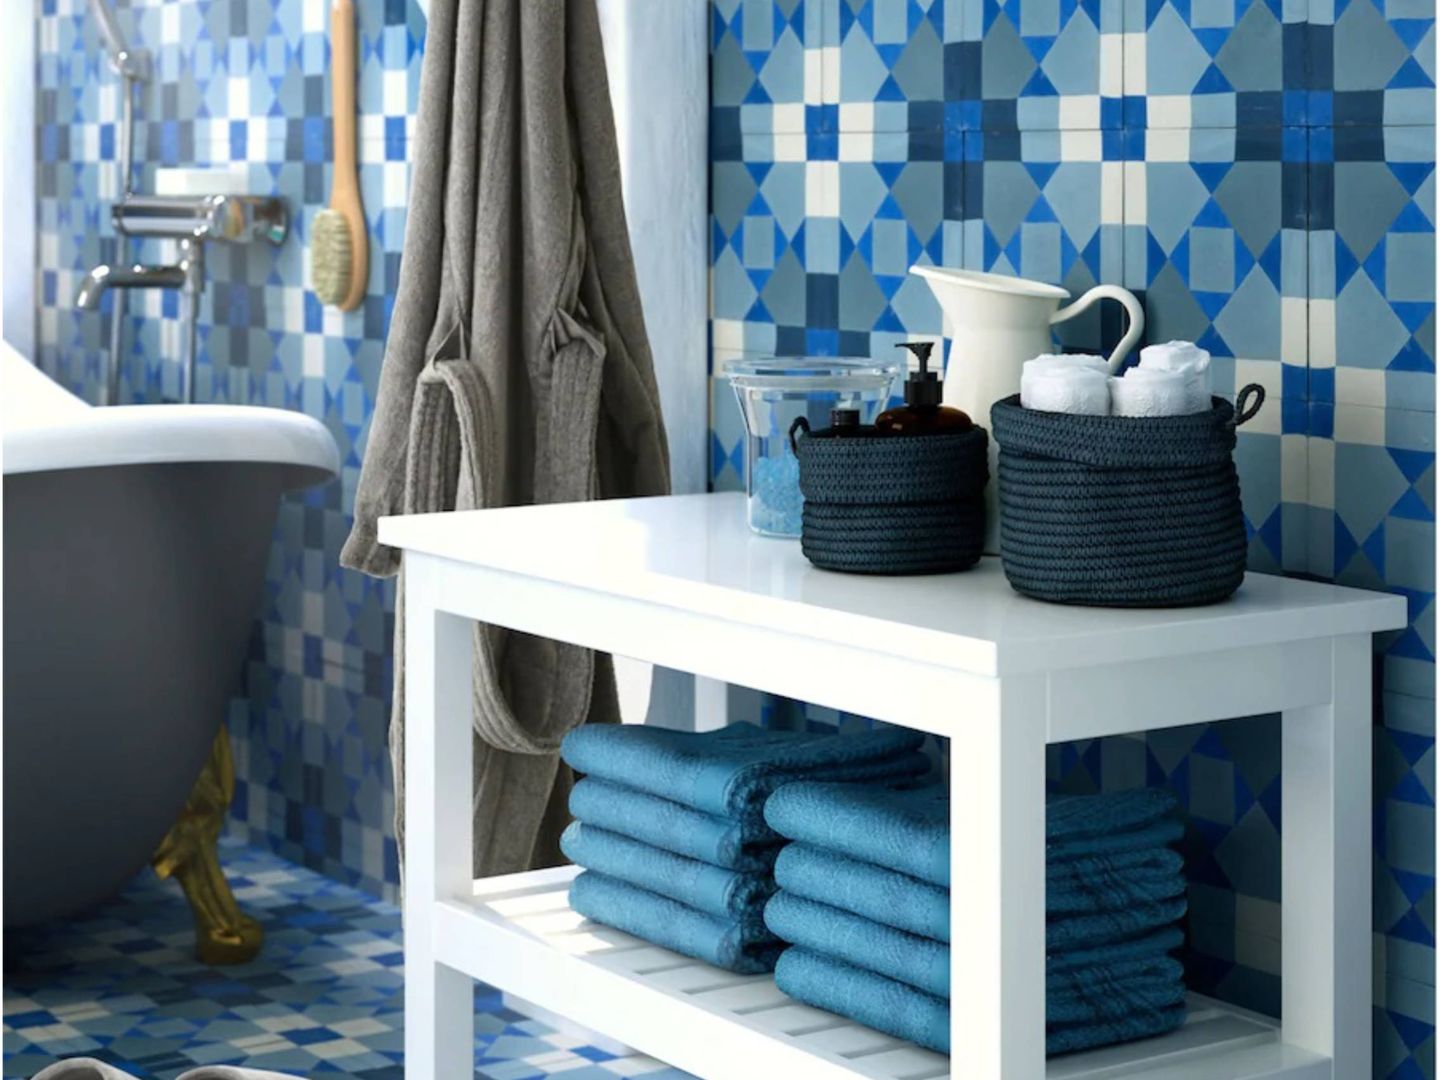 Ikea convierte tu baño en un spa. (Cortesía)